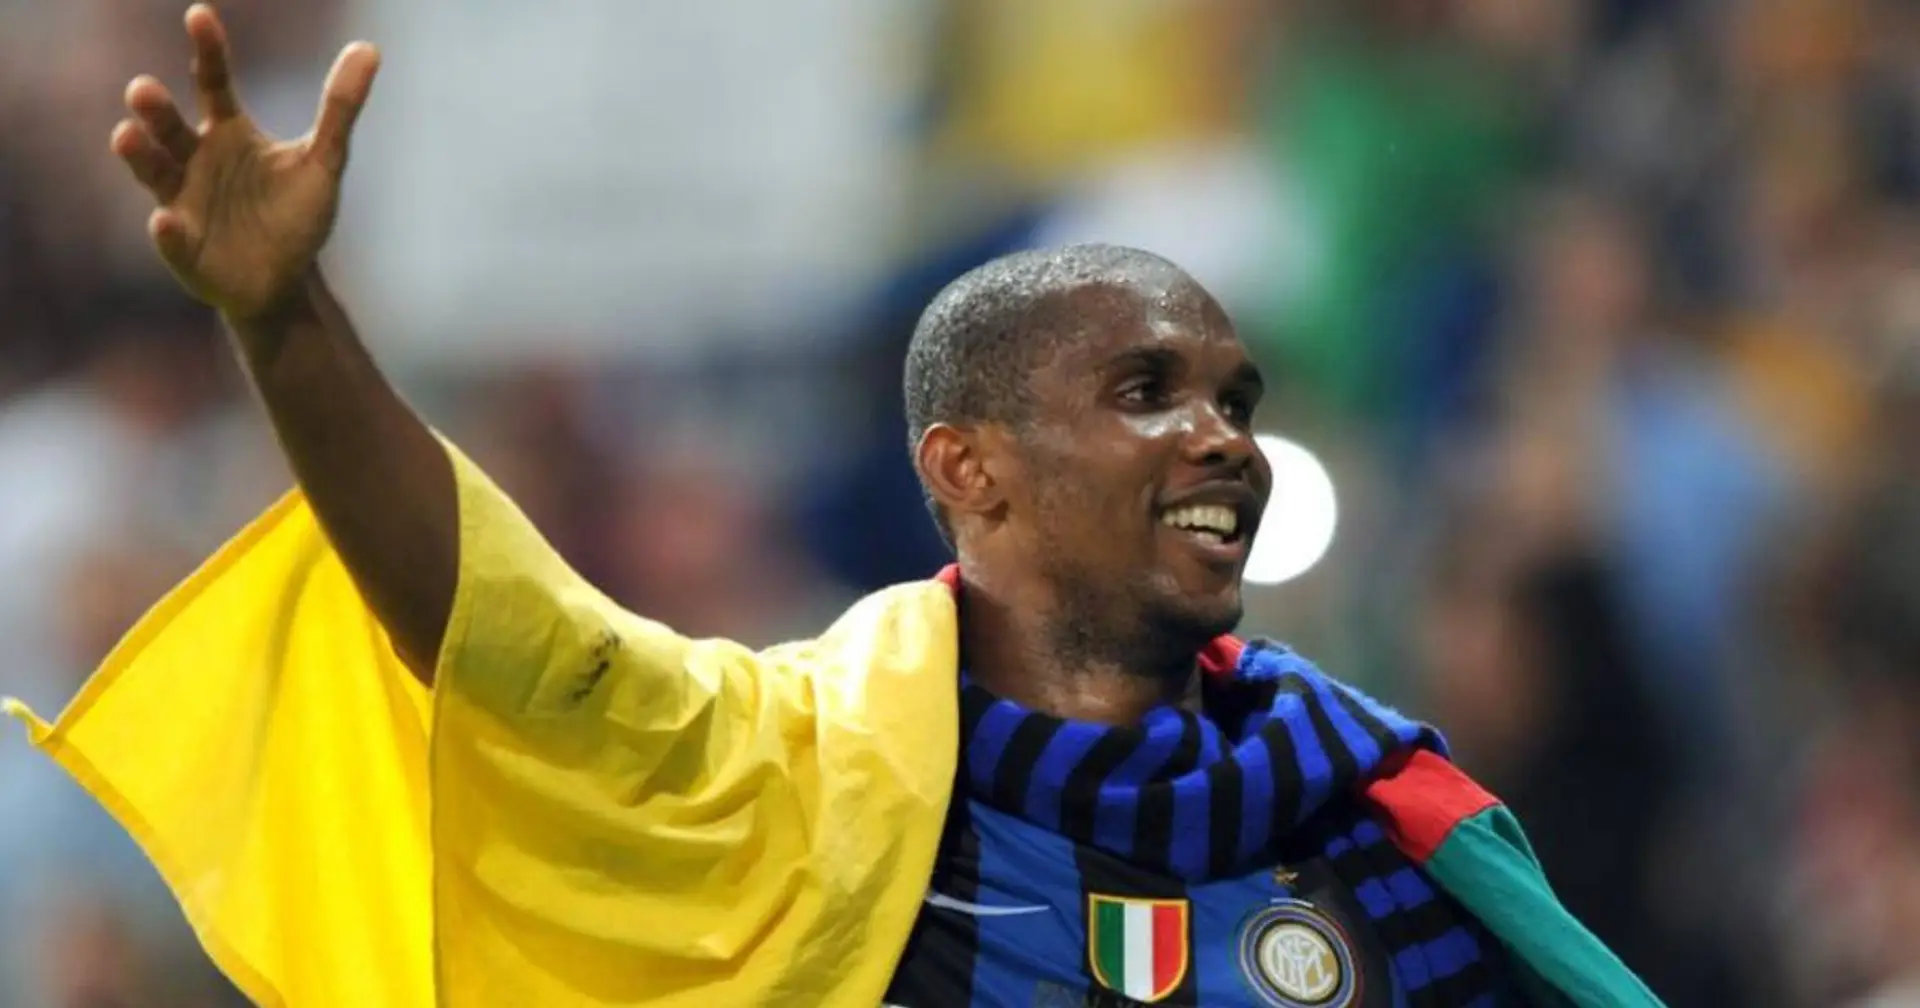 Eto'o inserito nella Hall of Fame dell'Inter: i Nerazzurri rendono omaggio a uno degli eroi del Triplete